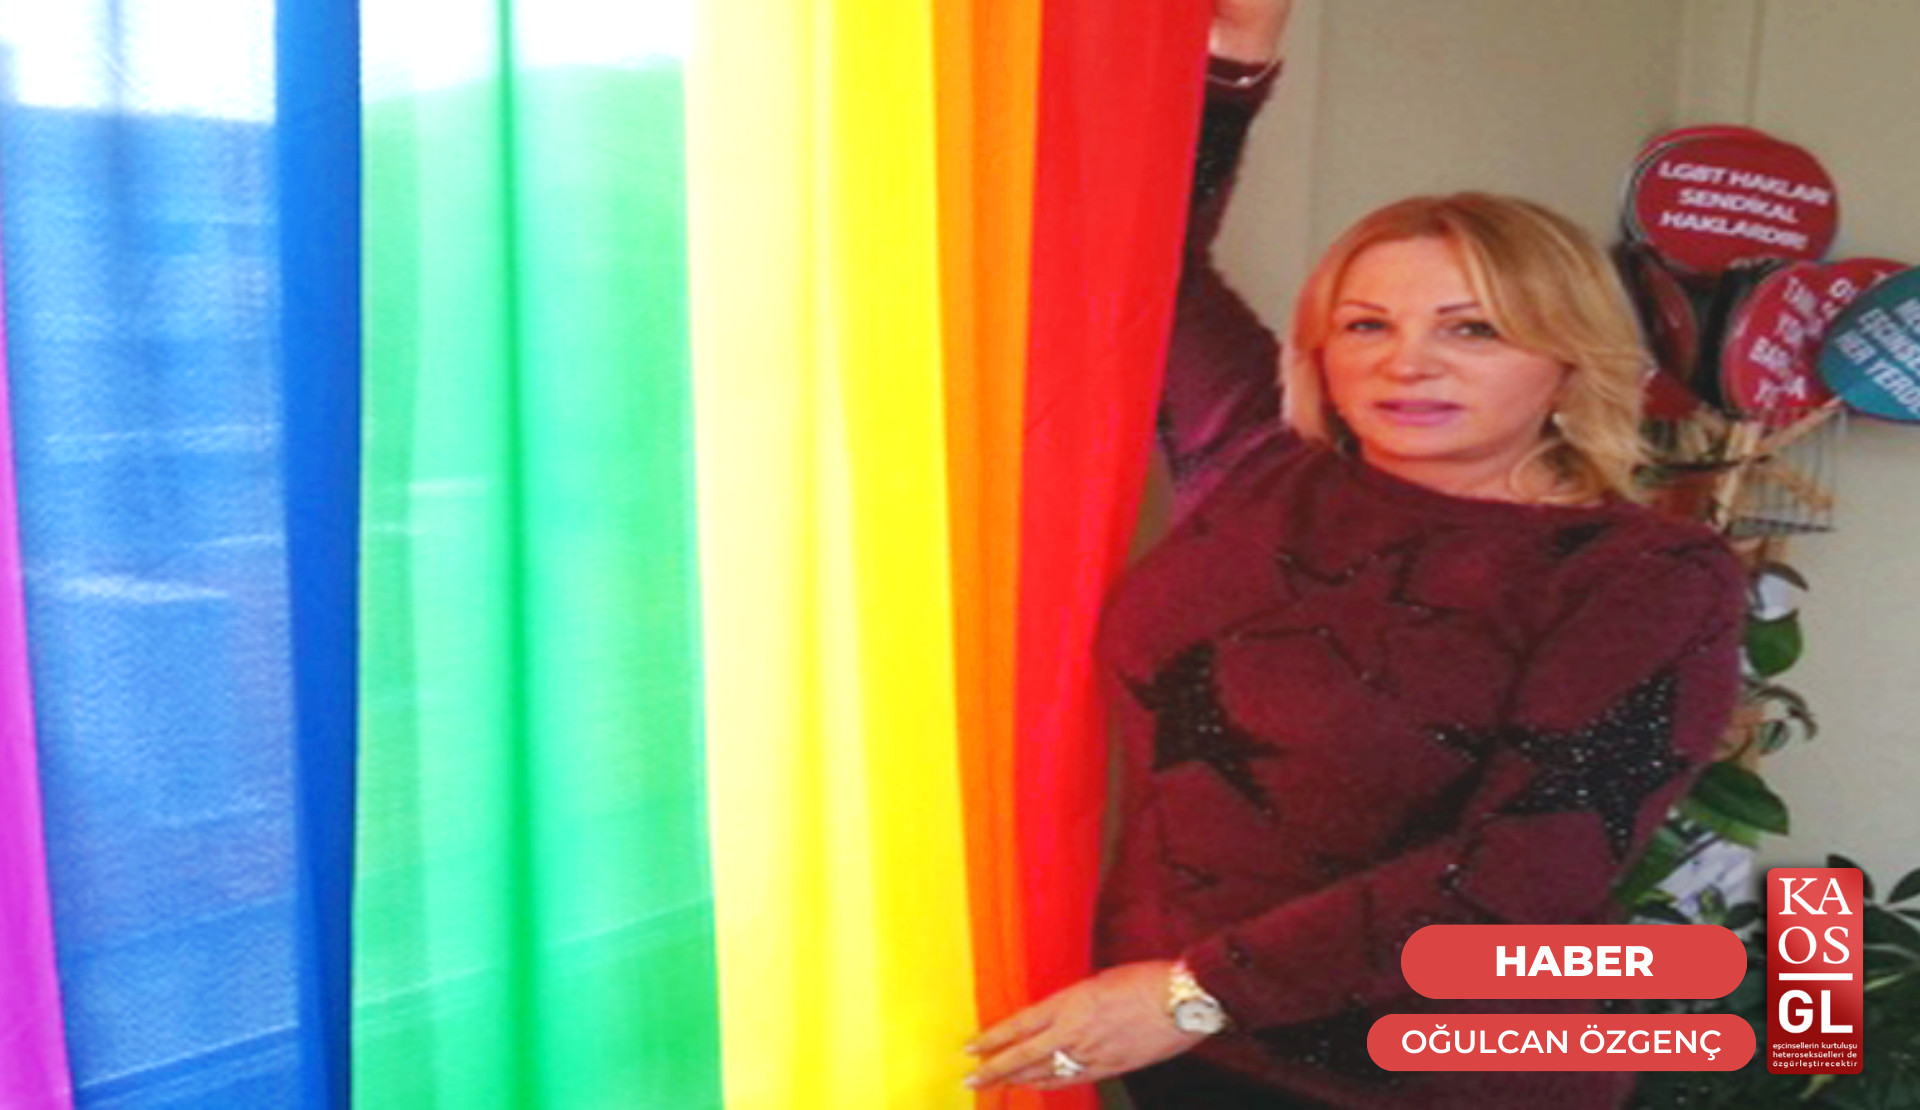 “LGBTİ+’ları seçilebilecekleri yerlerden aday göstermek gerekiyor” Kaos GL - LGBTİ+ Haber Portalı